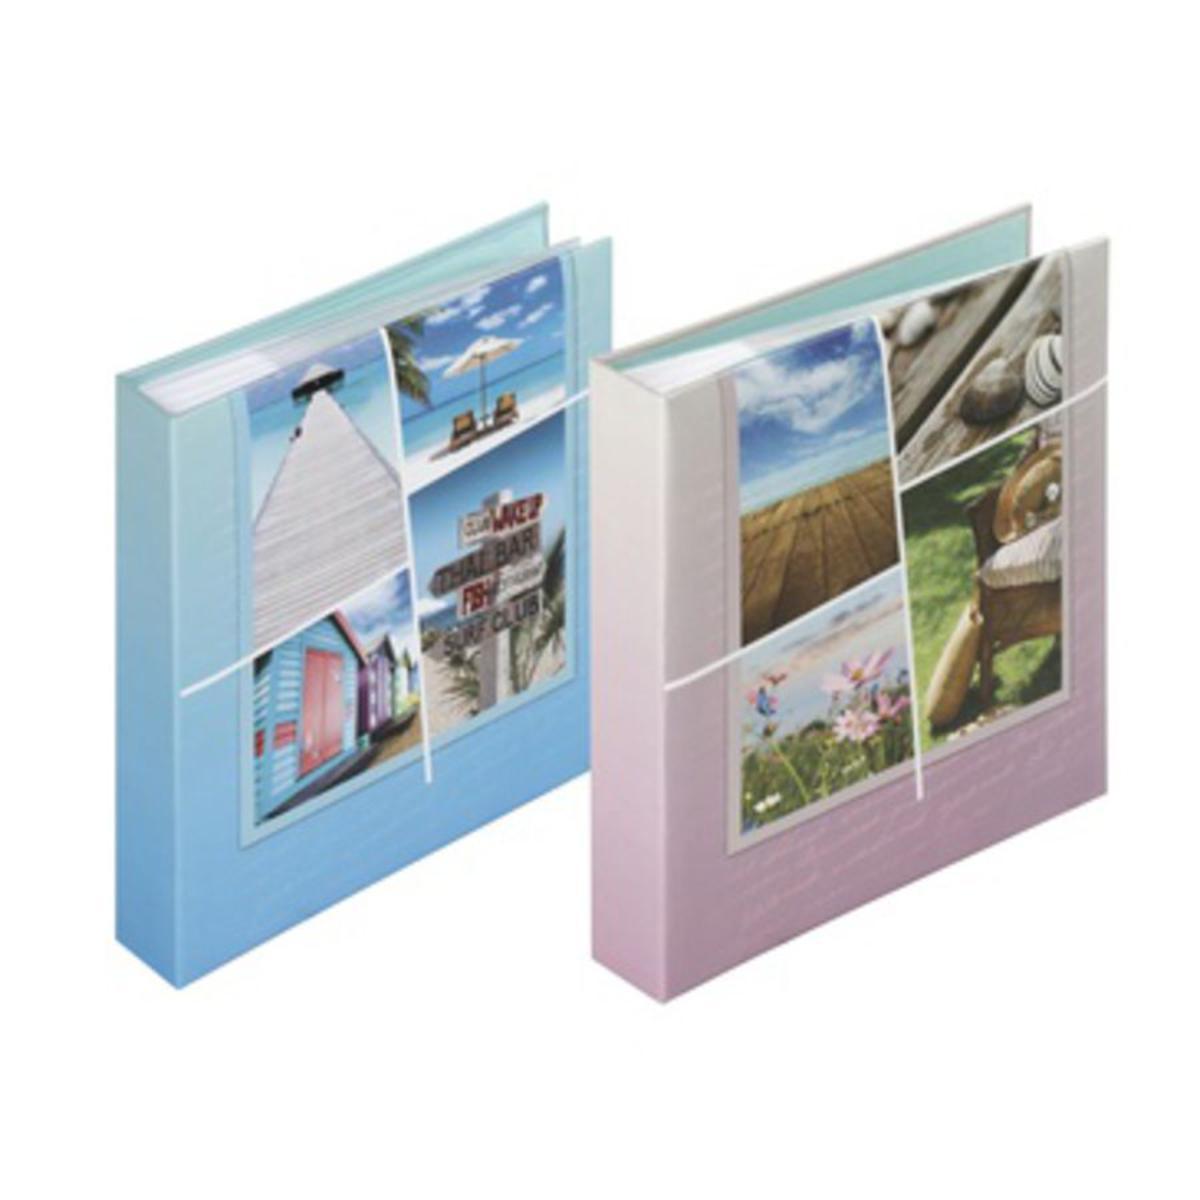 Album Callio - 160 photos - 25,6 x 24,7 cm - Couverture carton - Polypropylène - Bleu - Violet